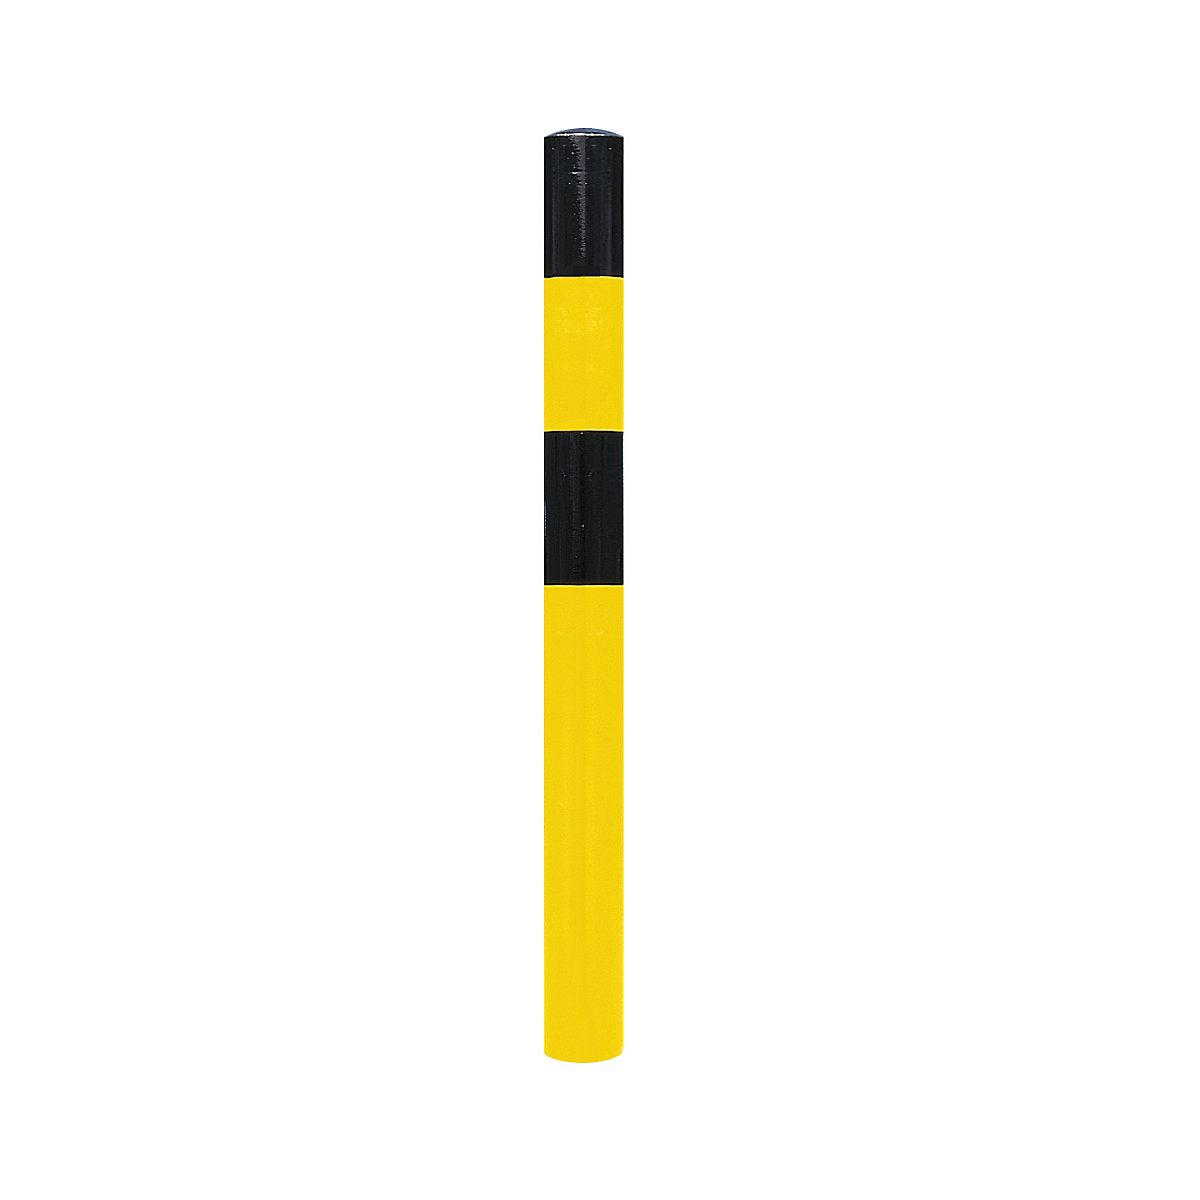 Stup za ograđivanje, za betoniranje, Ø 90 mm, lakiranje u crno-žutoj boji, 2 ušice-3